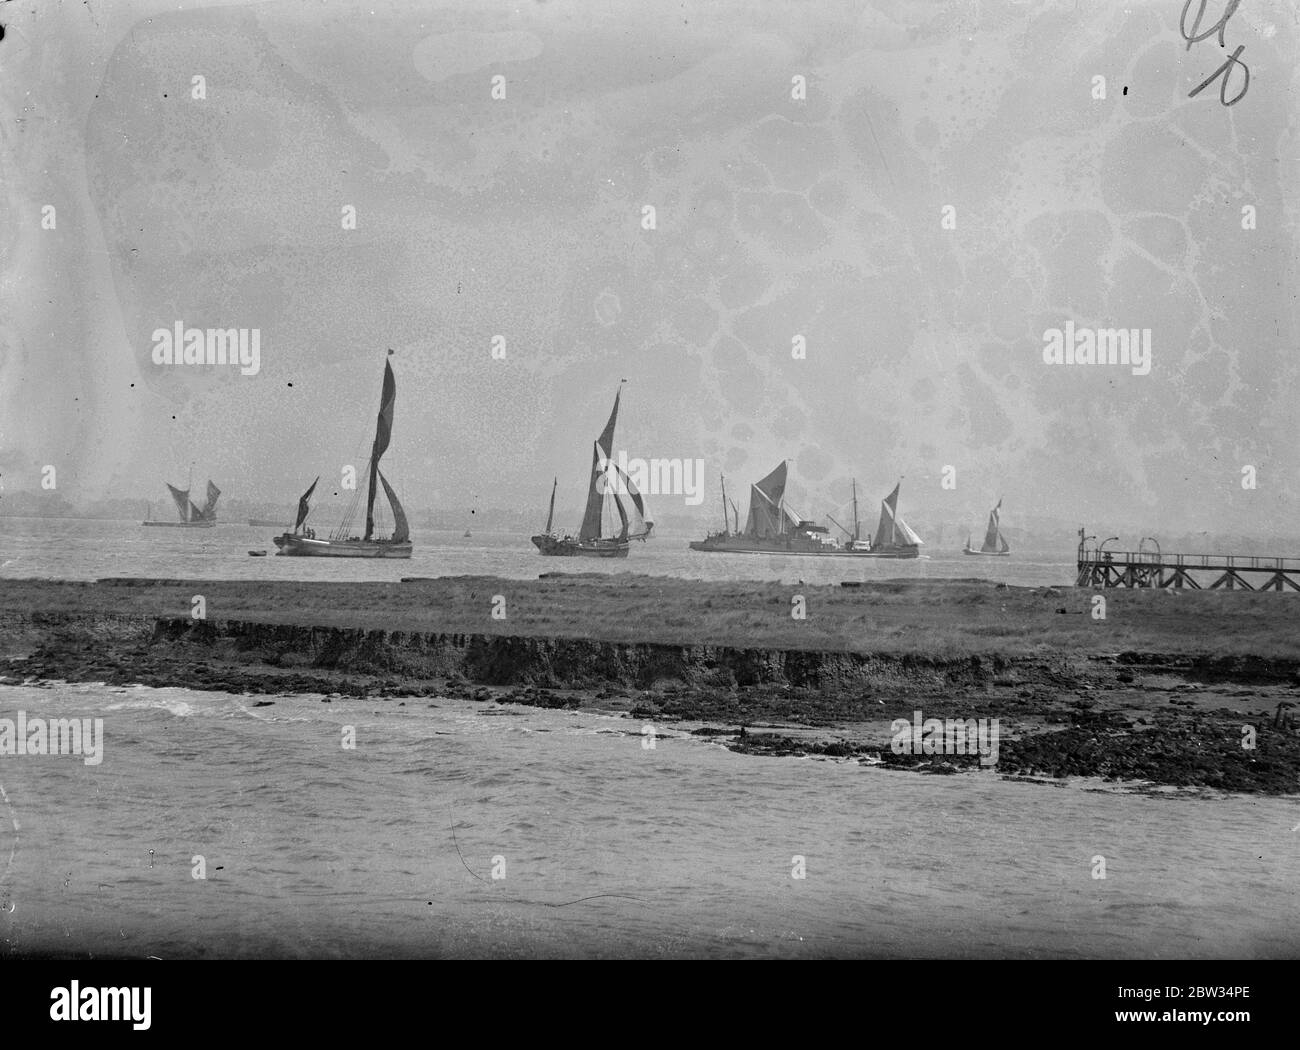 Segelkähne Rennen die Themse hinunter. Segelschiffe auf der Themse verwendet nahm an der jährlichen Rennen aus der unteren Hoffnung erreichen, den Fluss hinunter. Die Segelkähne manövrieren für Position zu Beginn des Rennens von Lower Hope Reach , Gravesend . 28 Juni 1932 Stockfoto